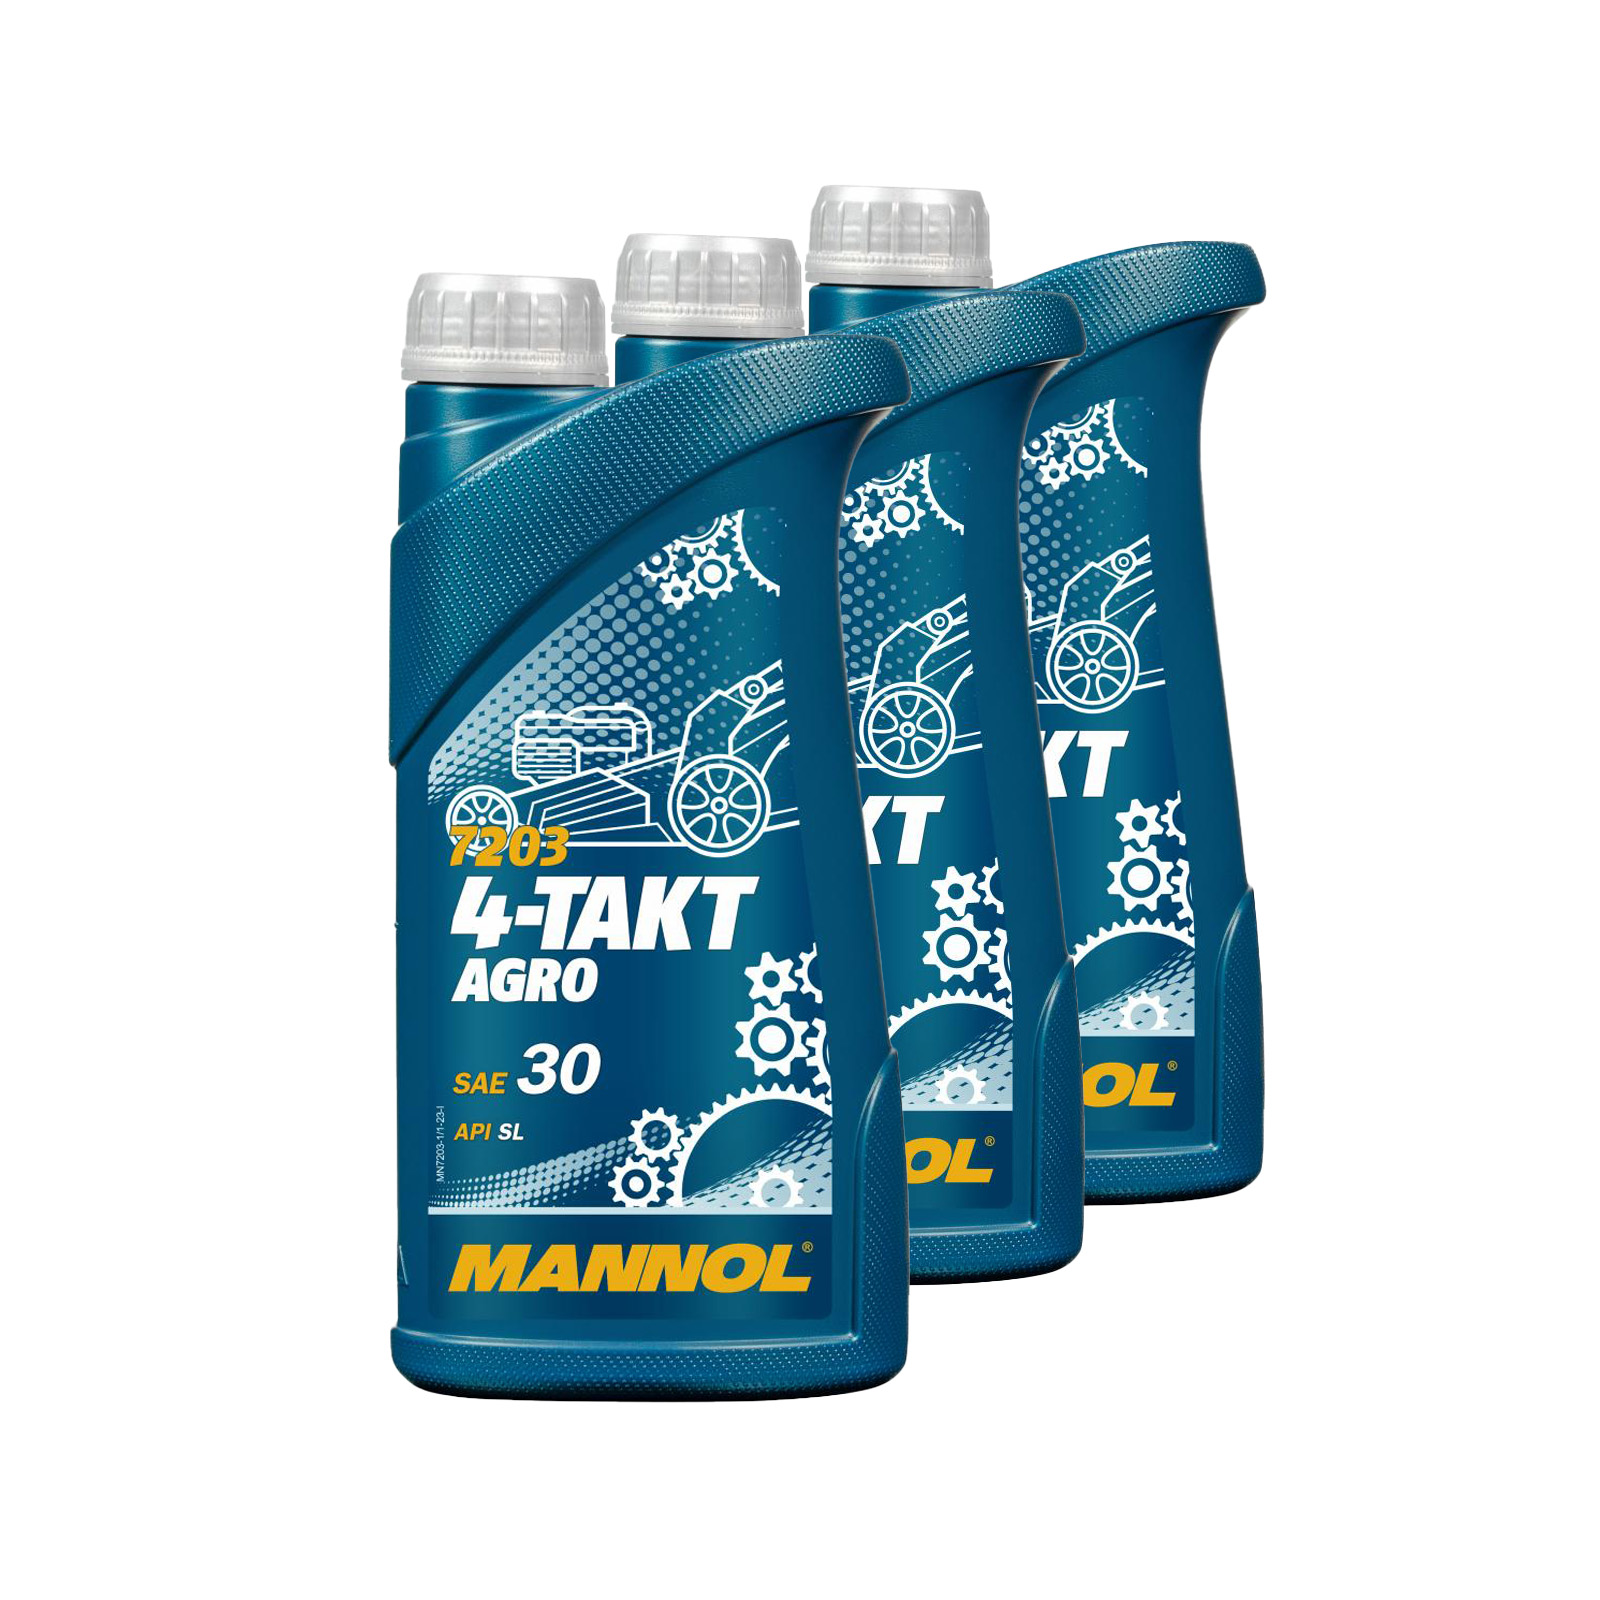 3 Liter (3x1) MANNOL 4-Takt Agro 7203 SAE 30 API SL Motoröl für Gartengeräte 